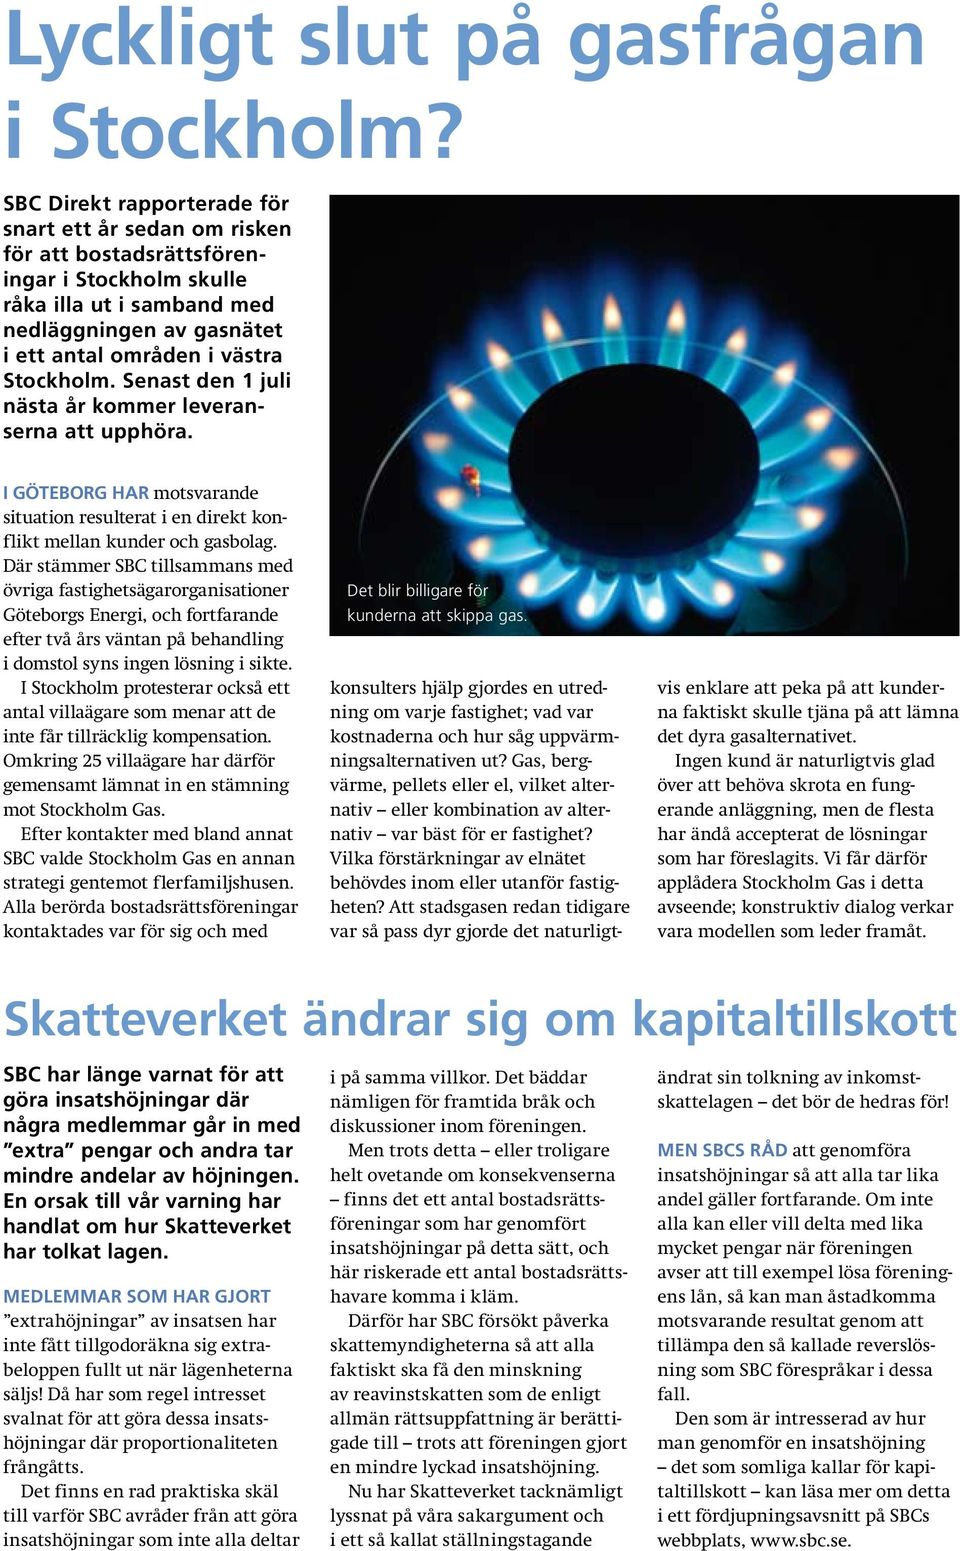 Där stämmer SBC tillsammans med övriga fastighetsägarorganisationer Göteborgs Energi, och fortfarande efter två års väntan på behandling i domstol syns ingen lösning i sikte.